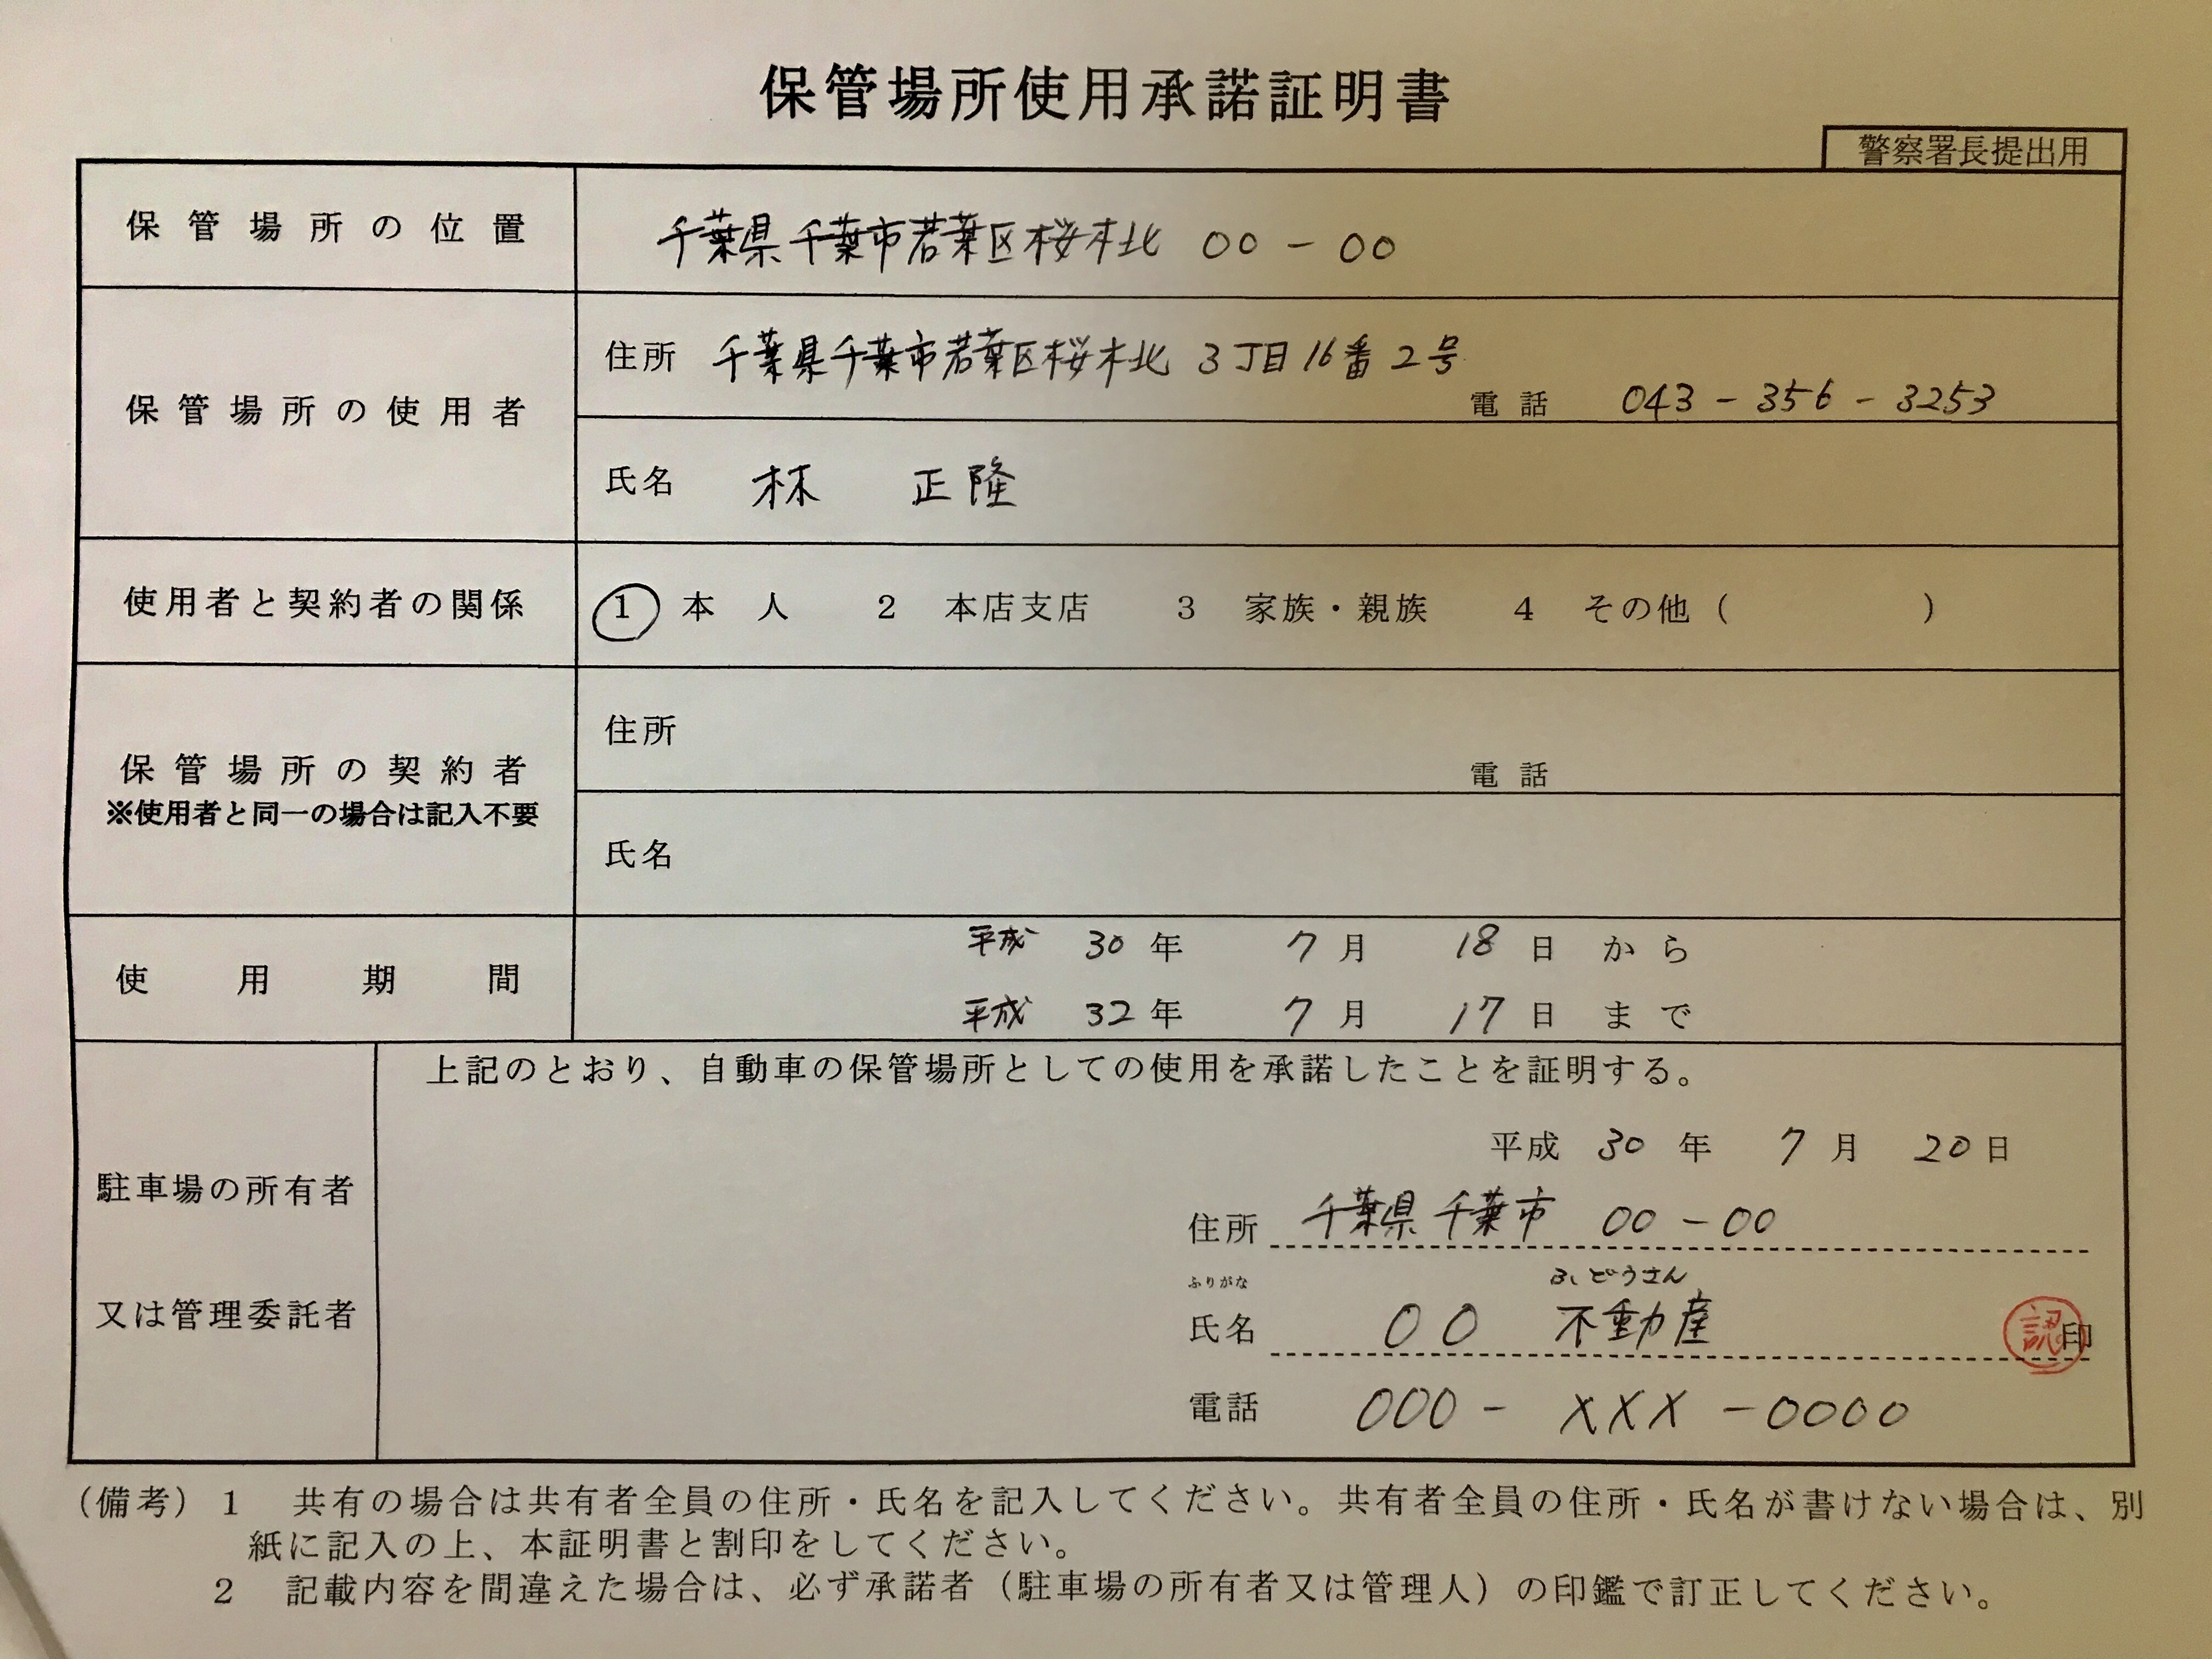 車庫証明の保管場所使用承諾証明書の書き方 車庫証明申請代行 千葉県内全域対応